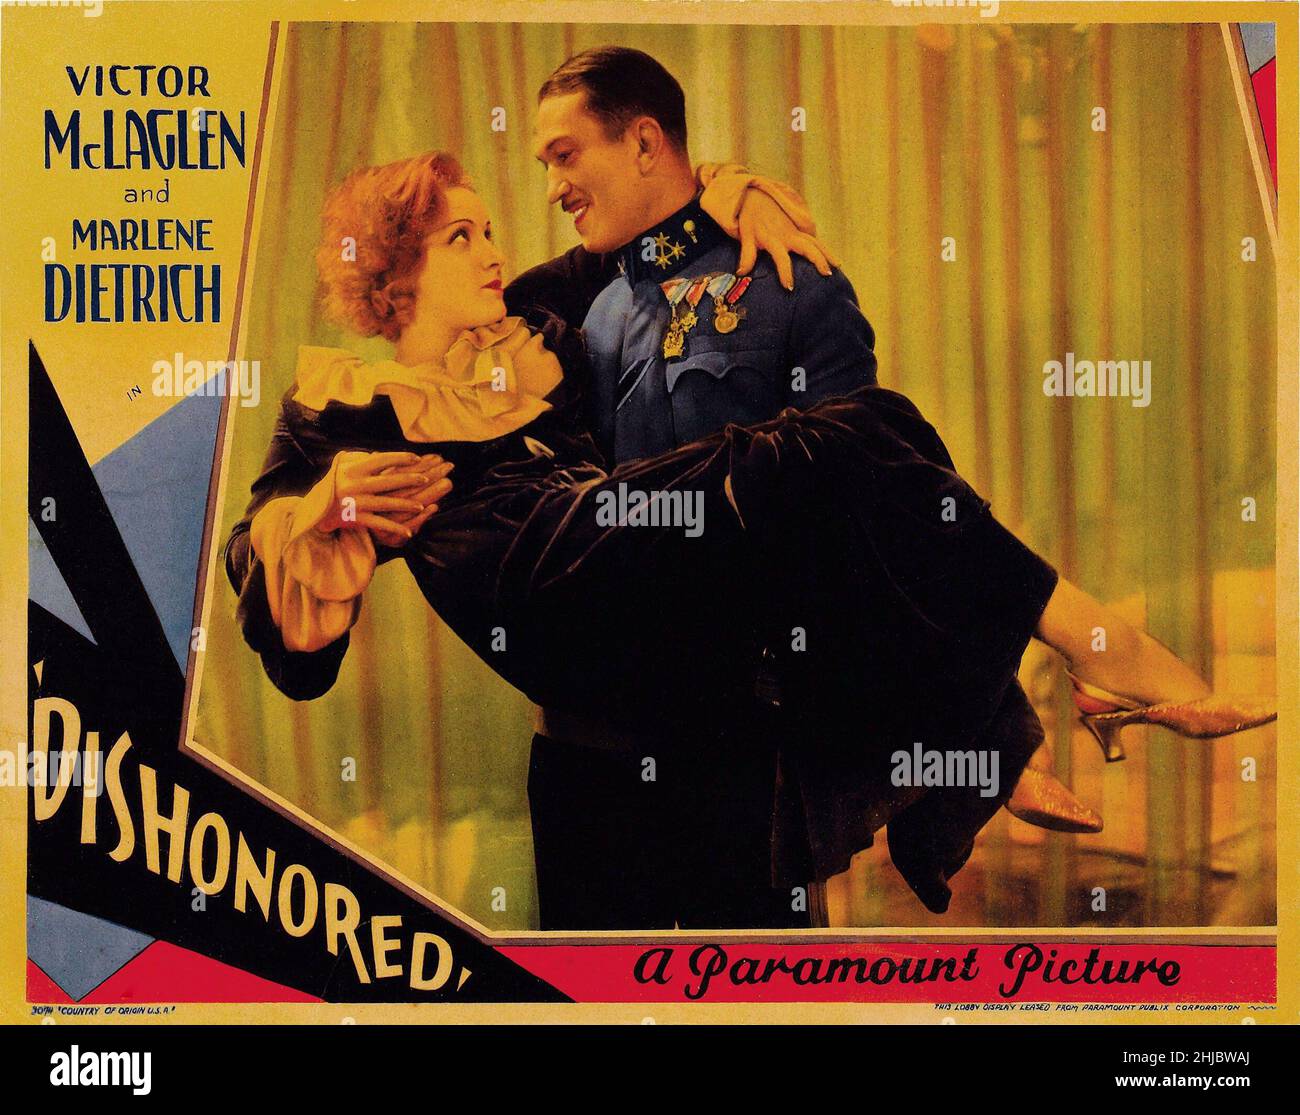 Dishonored Marlene Dietrich, Victor McLagen USA, 1931 Director: Josef von Sternberg Movie poster Stock Photo